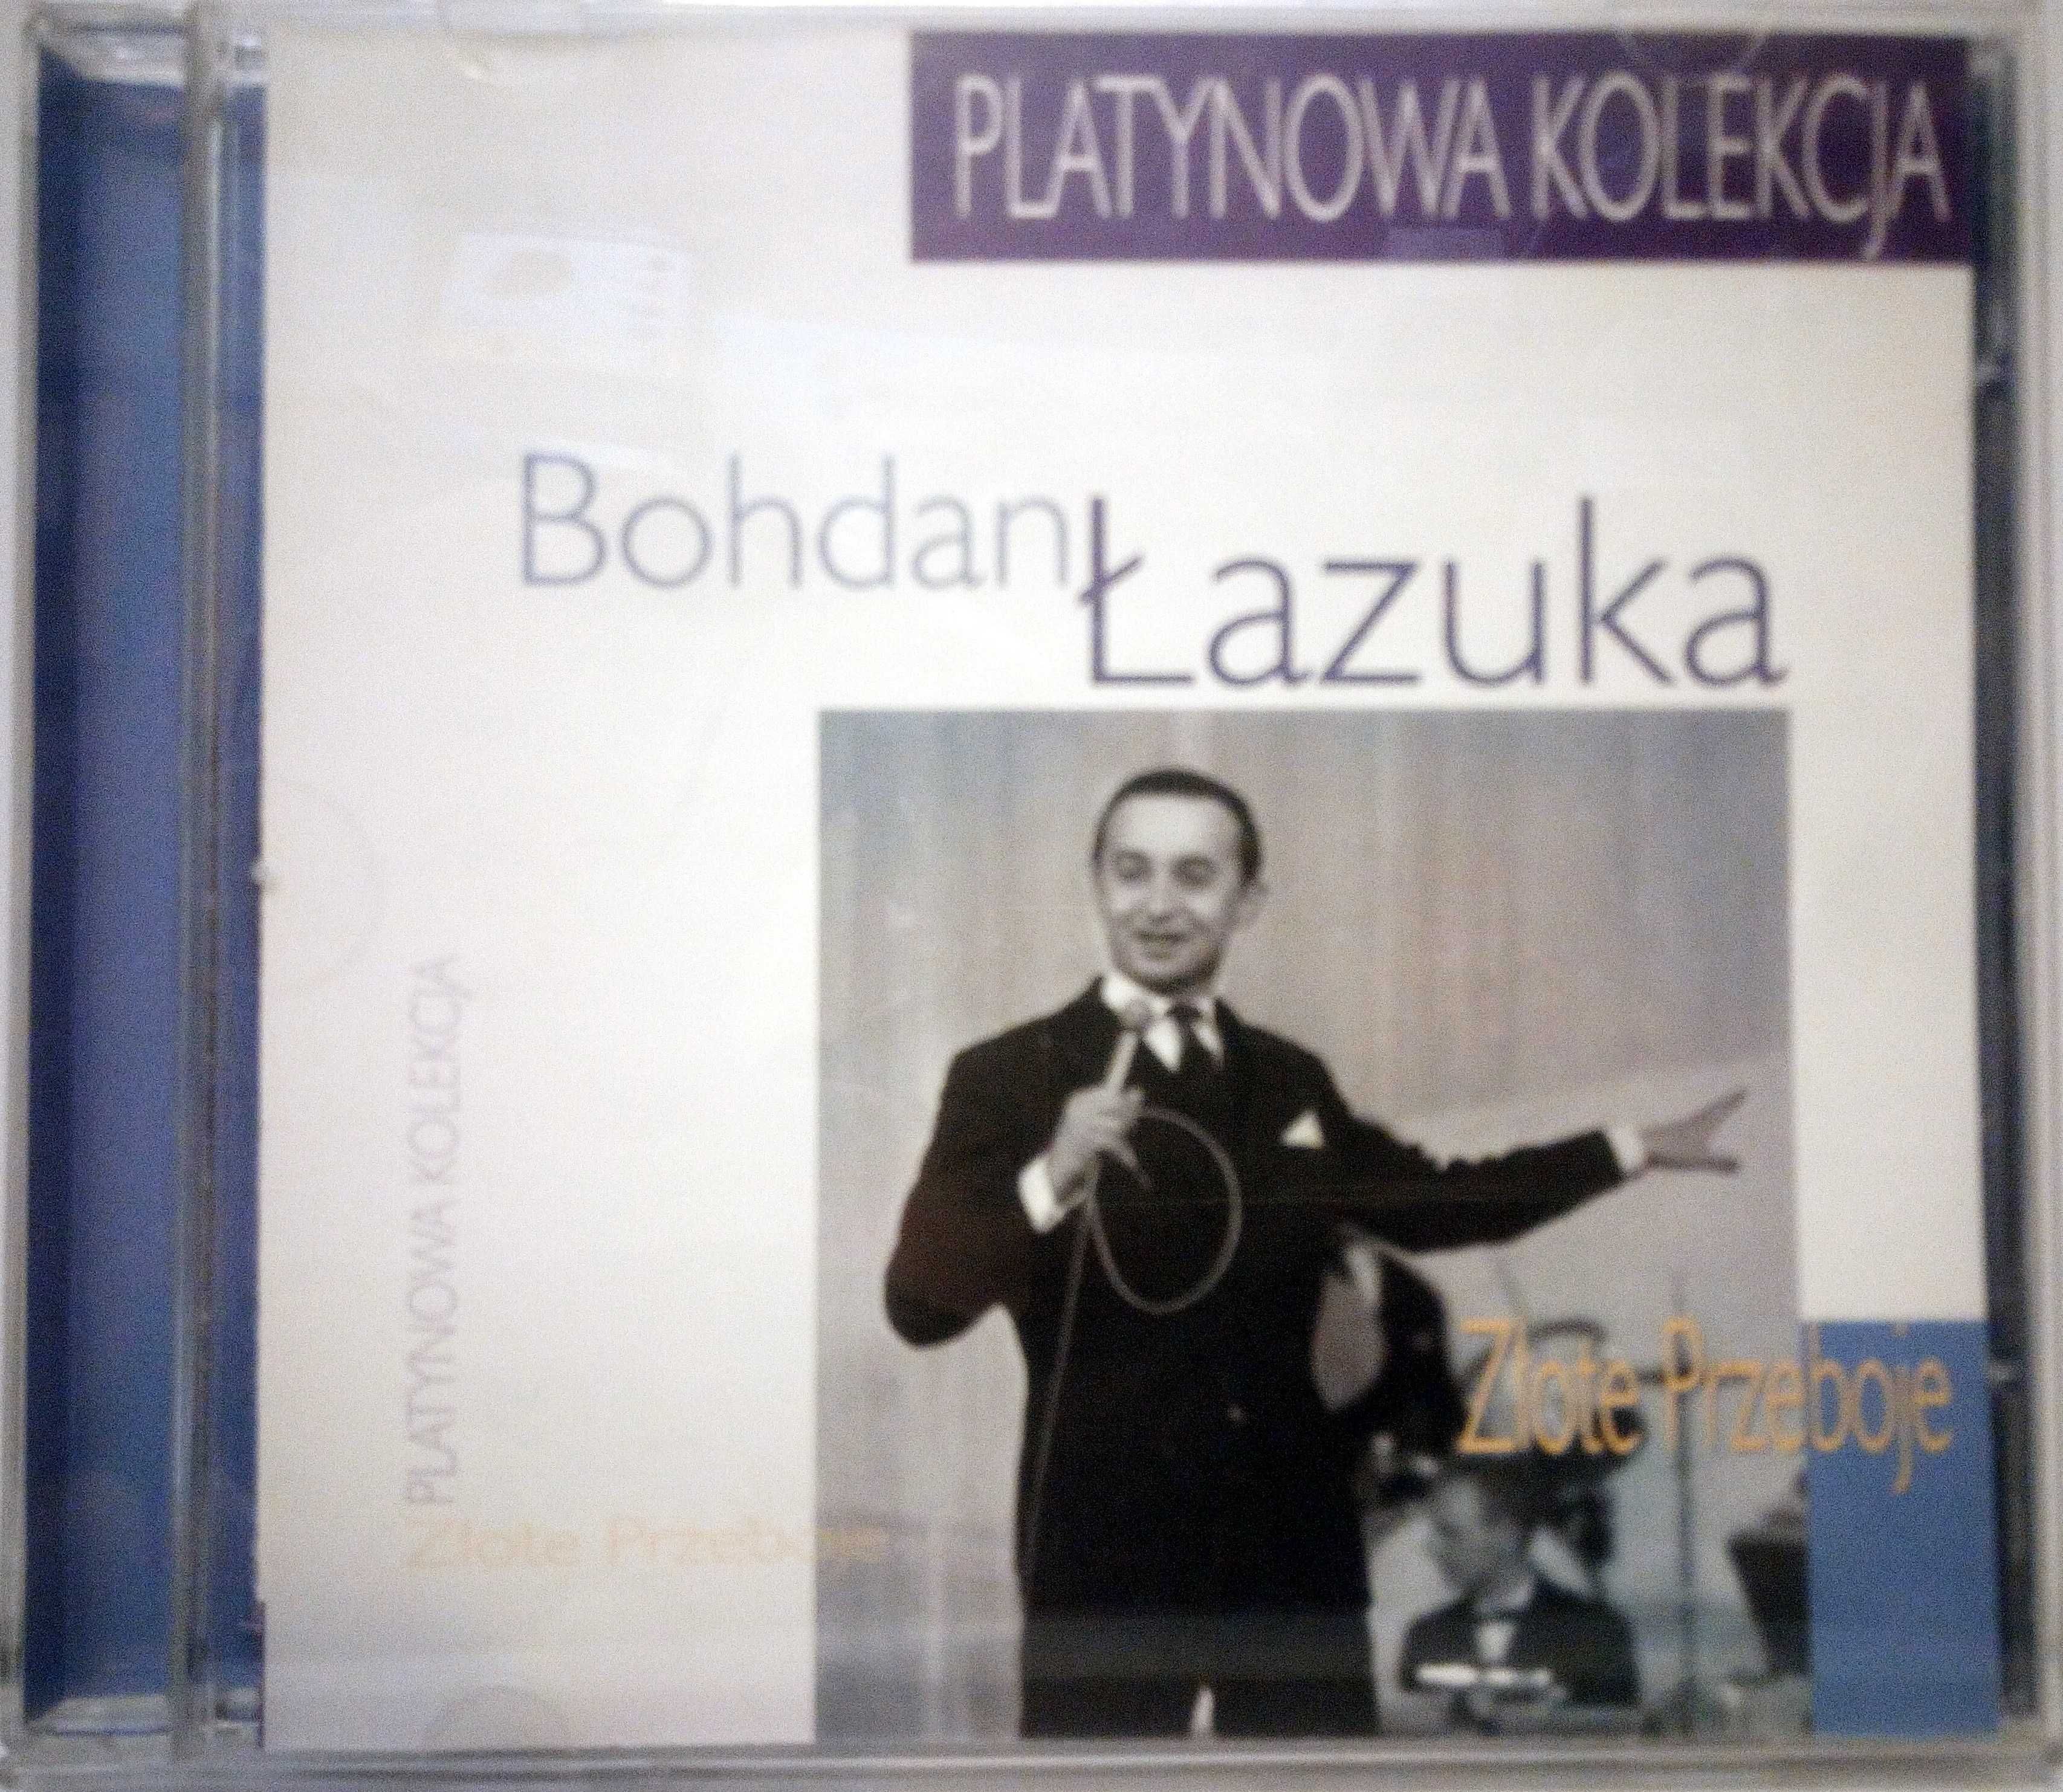 Bohdan Łazuka "Złote Przeboje" [Platynowa Kolekcja] CD